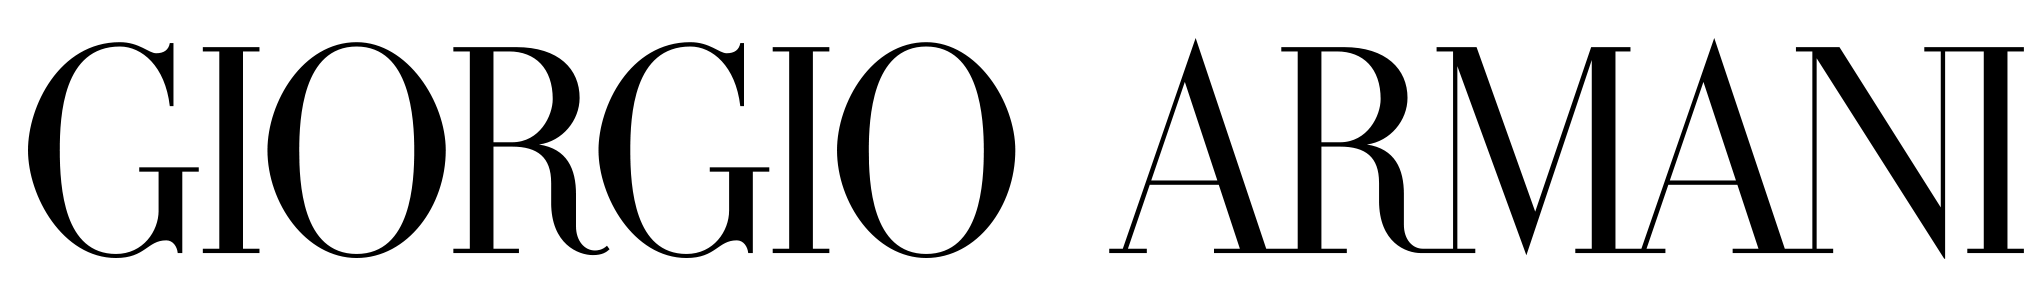 armani silos gıorgıo png logo #6728